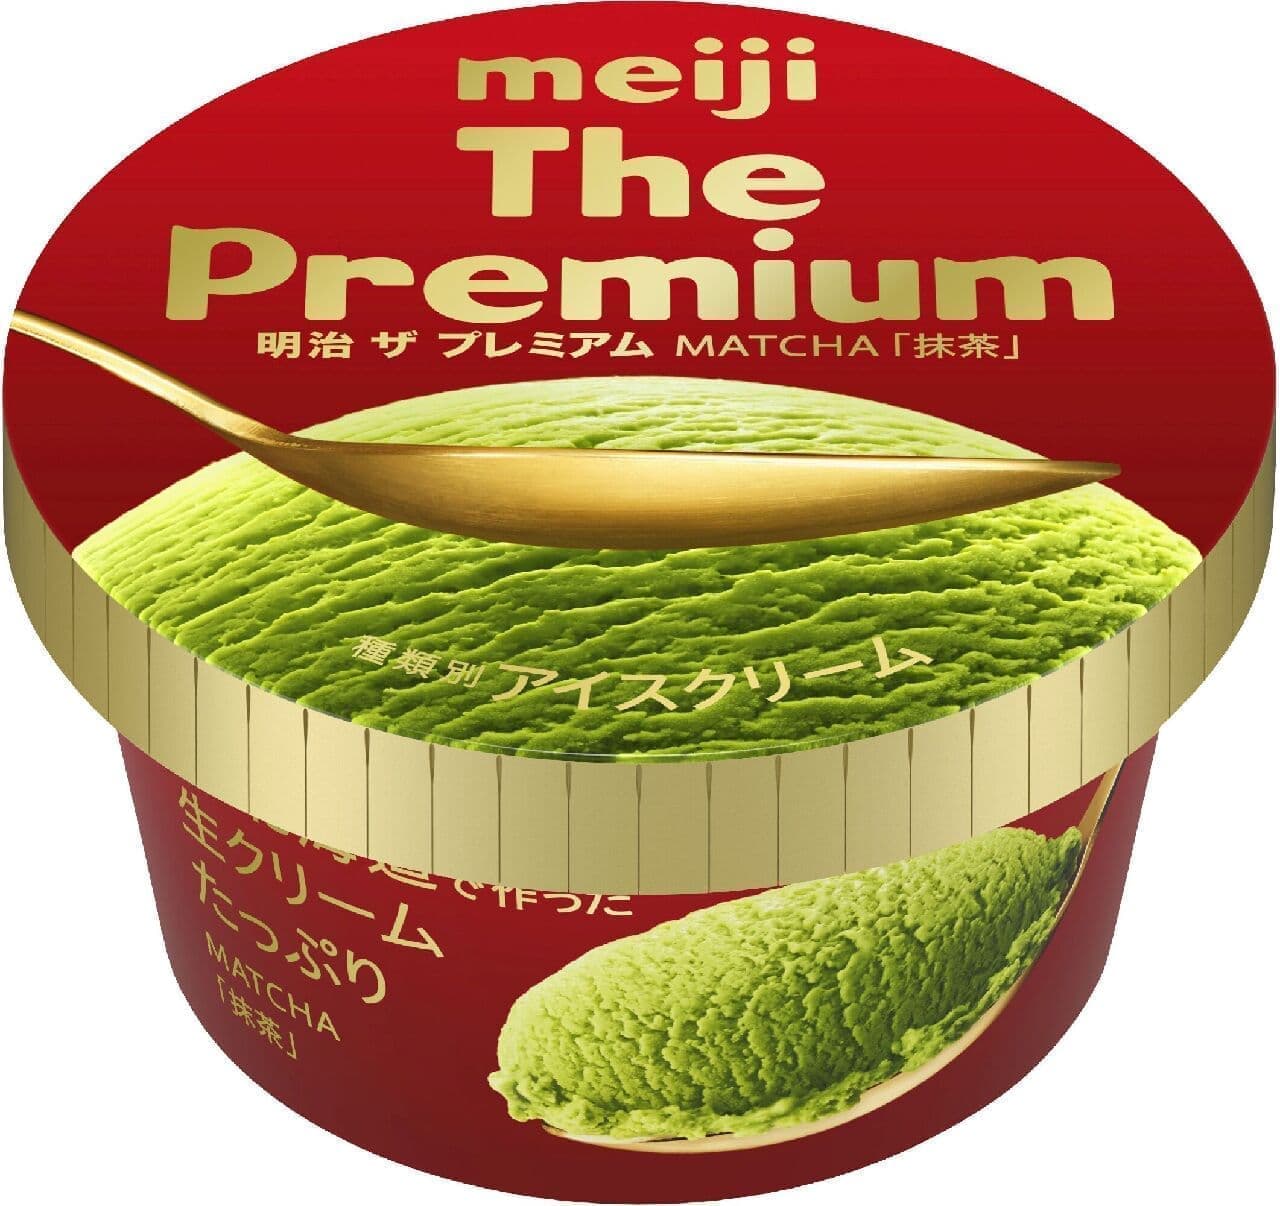 Meiji "Meiji The Premium Green Tea